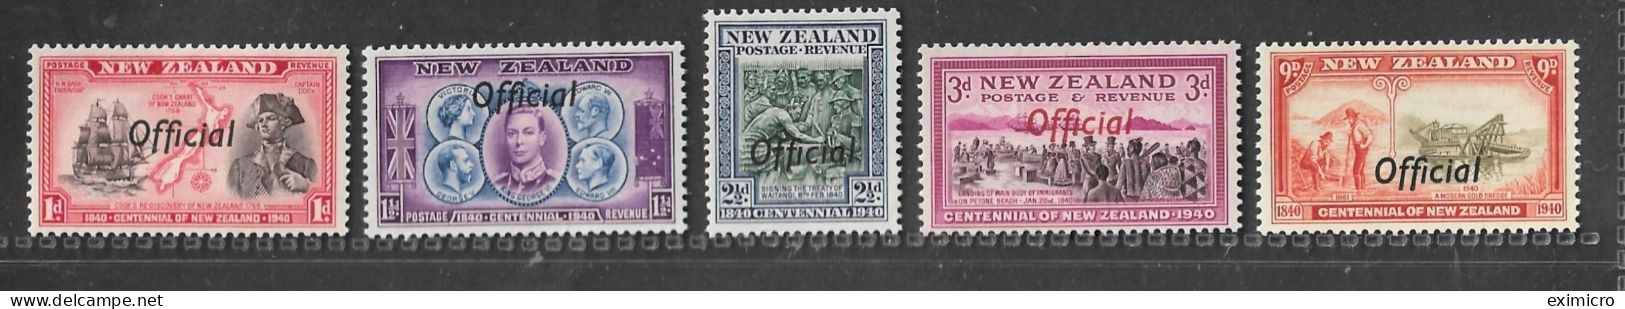 NEW ZEALAND 1940 CENTENNIALS OFFICIALS SG O142, O143, O145, O146, O150 UNMOUNTED MINT Cat £40 - Service